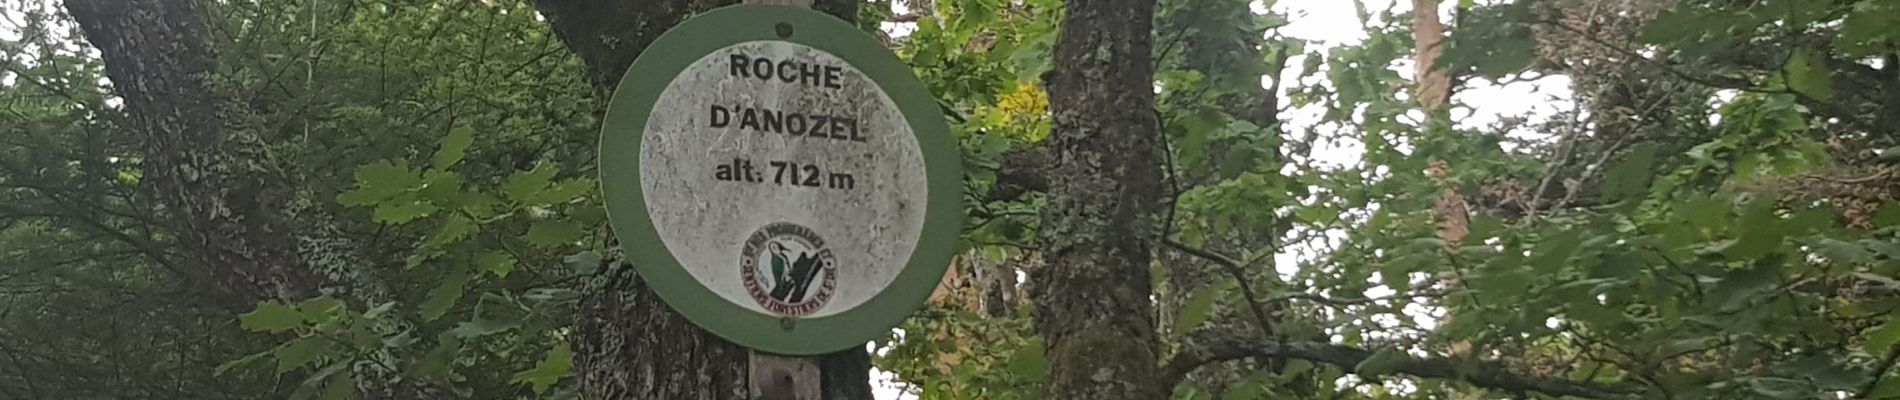 Tour Pfad Taintrux - 2020 08 16  Roche d'Anozel  - Photo